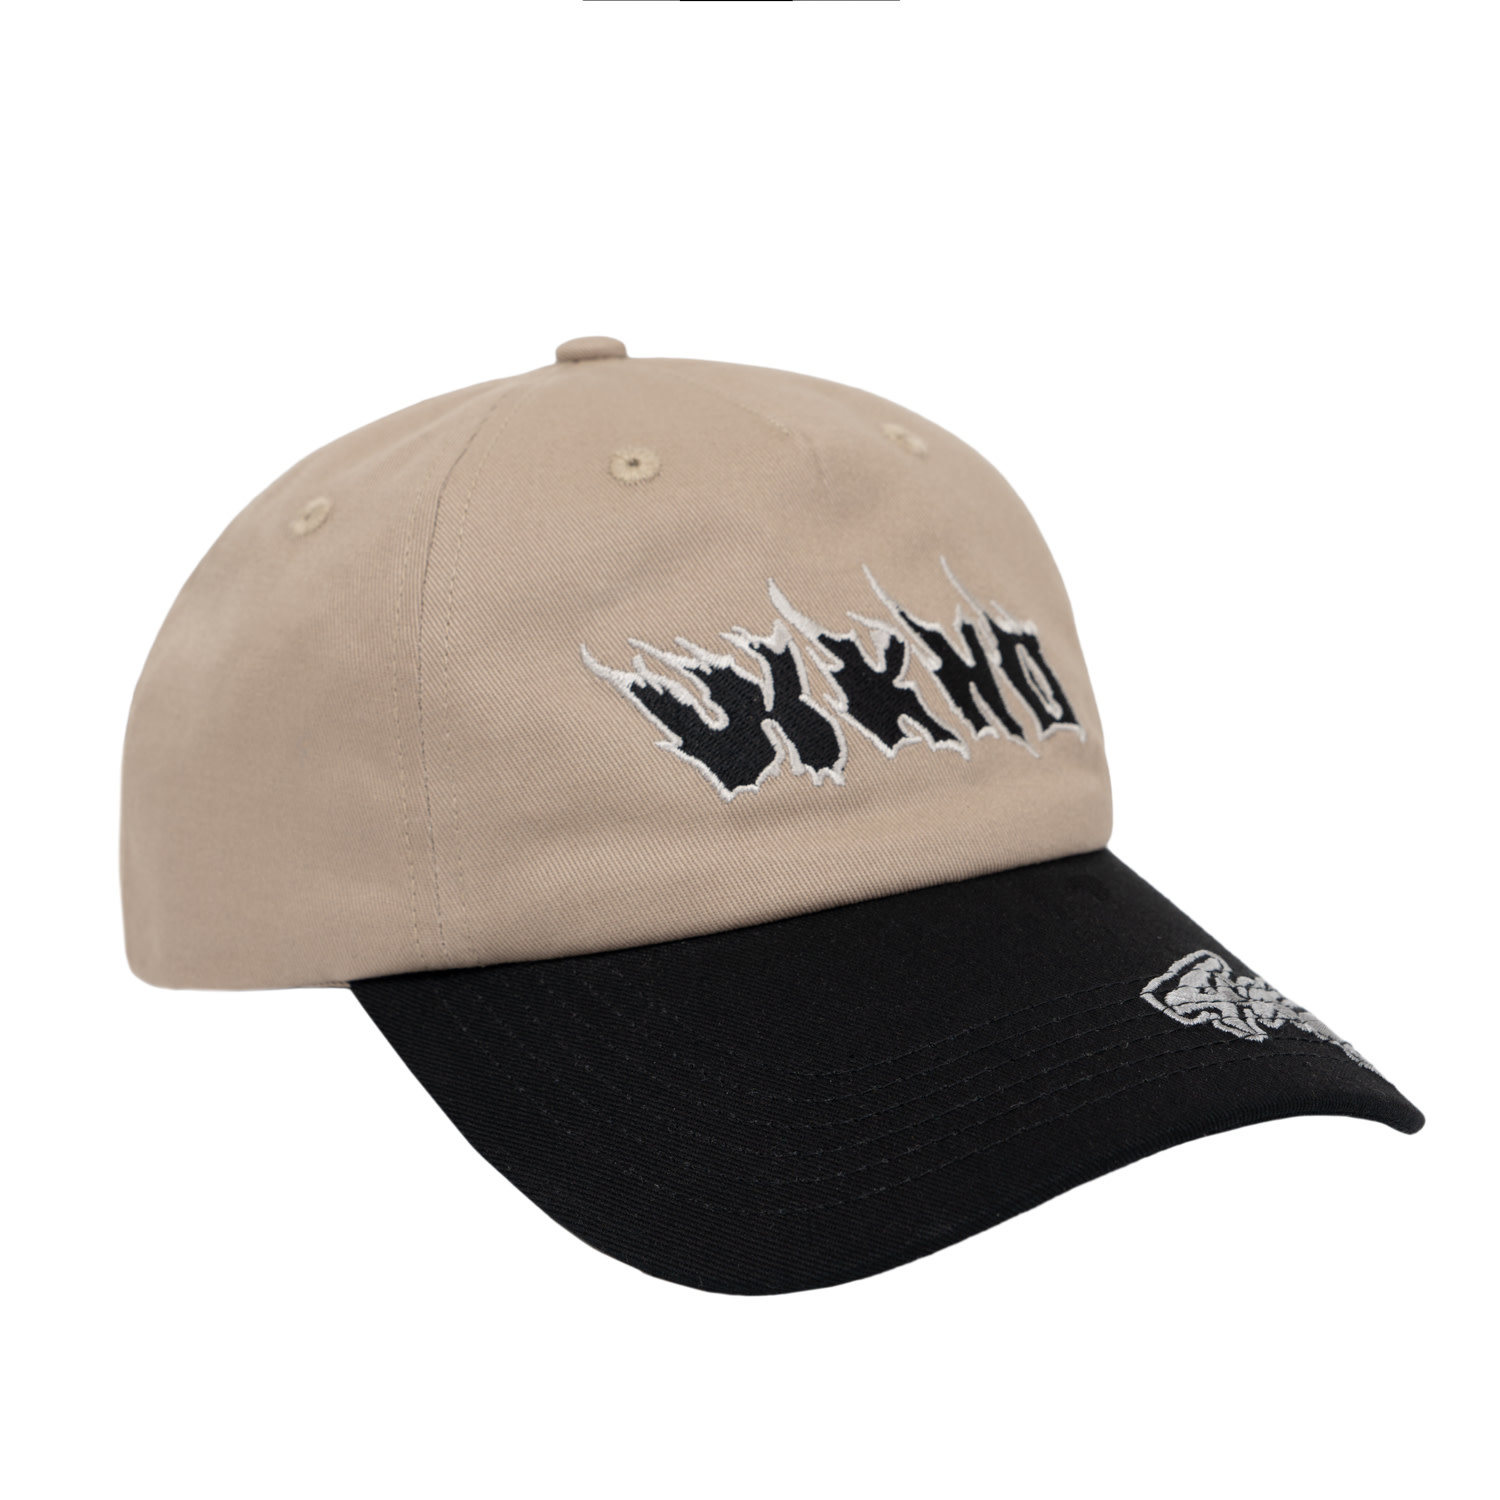 WKND Hot Fire 4x4 Hat Khaki